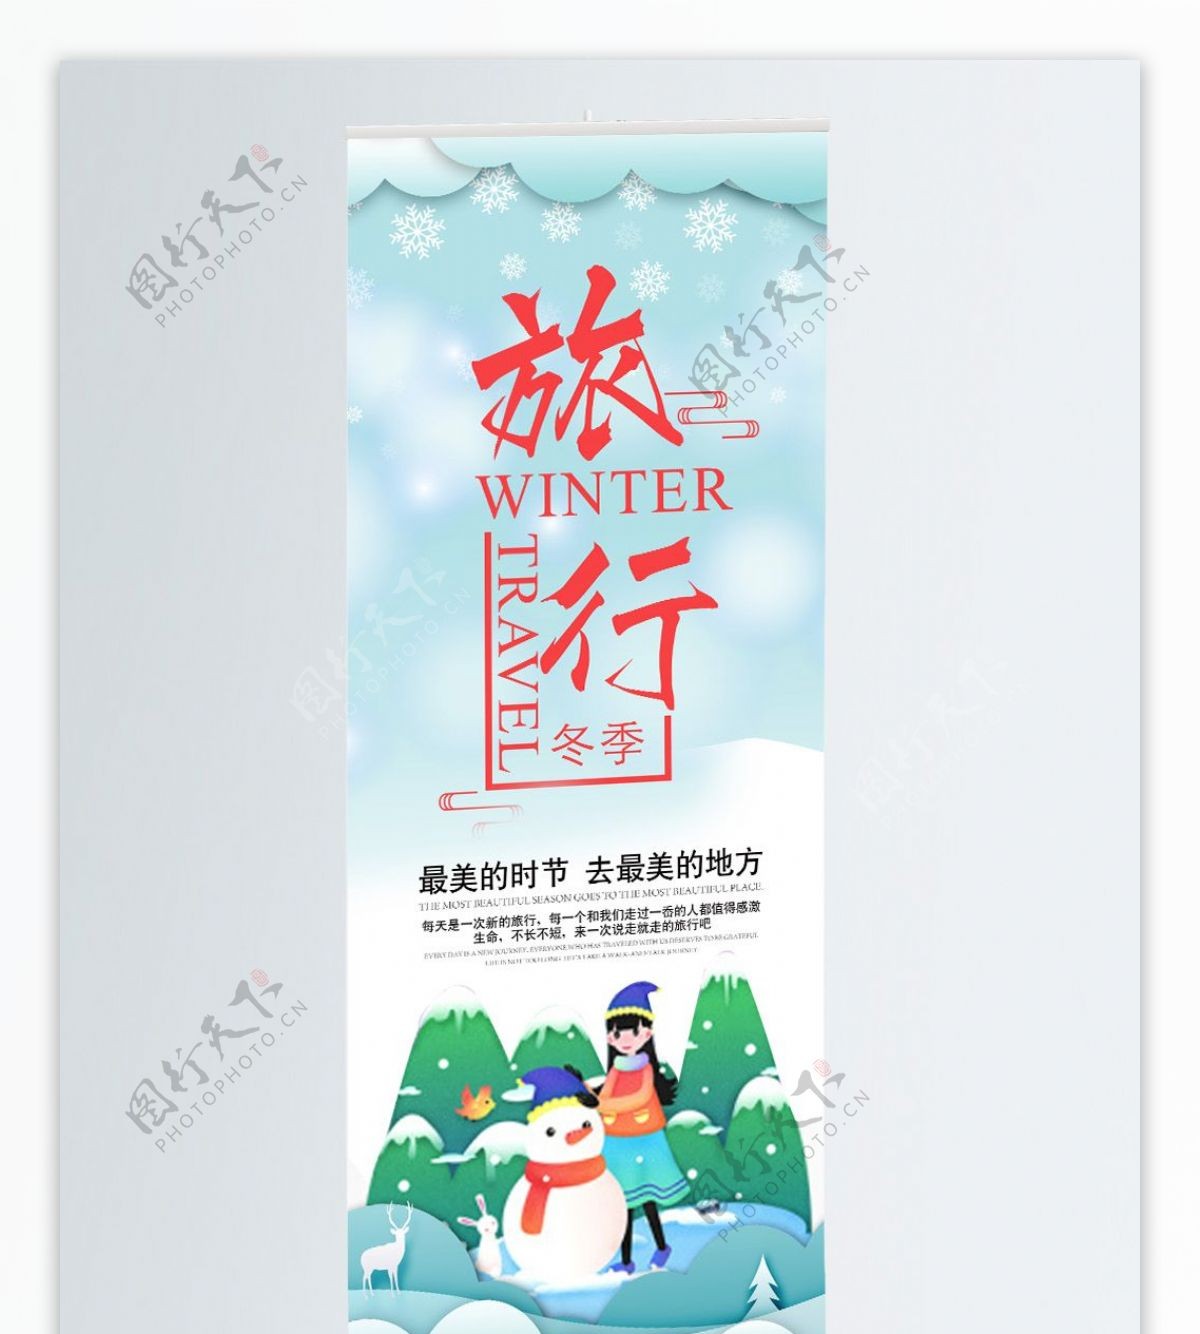 冬季旅行展架宣传